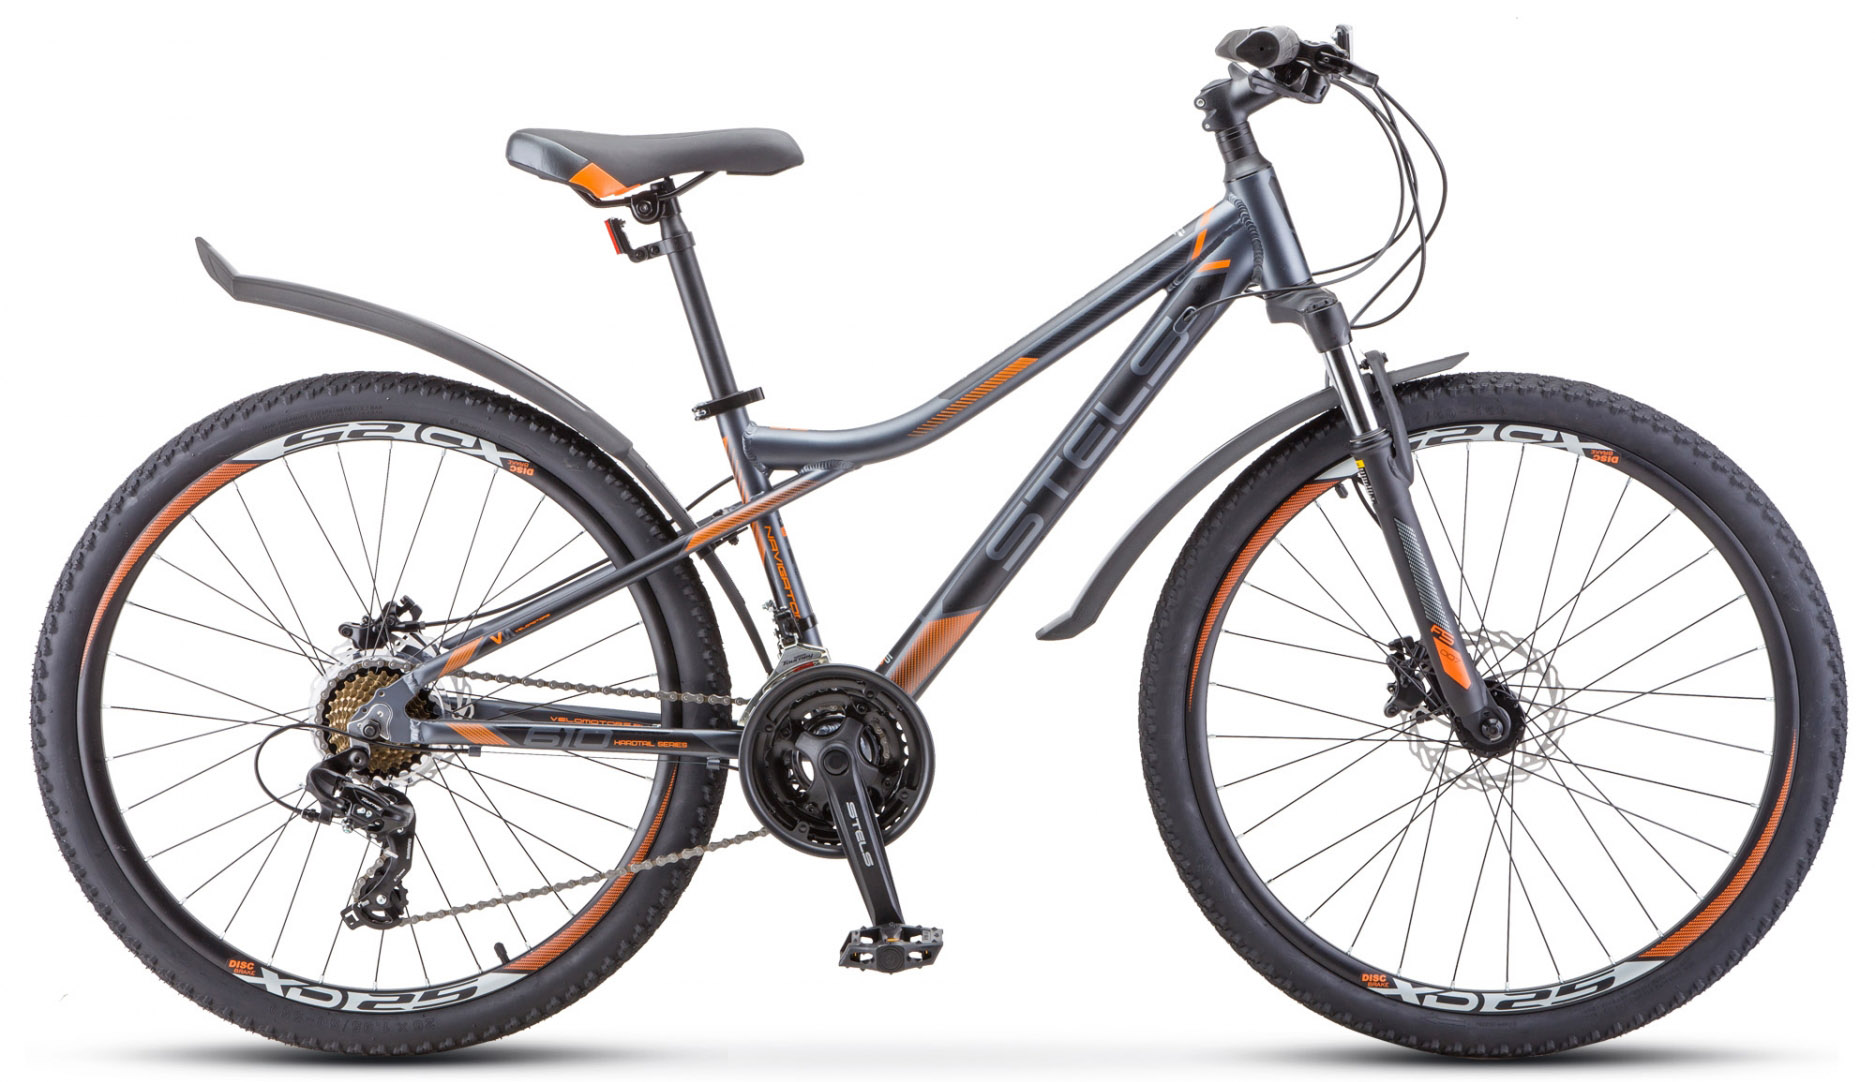  Отзывы о Горном велосипеде Stels Navigator 610 D V010 2020